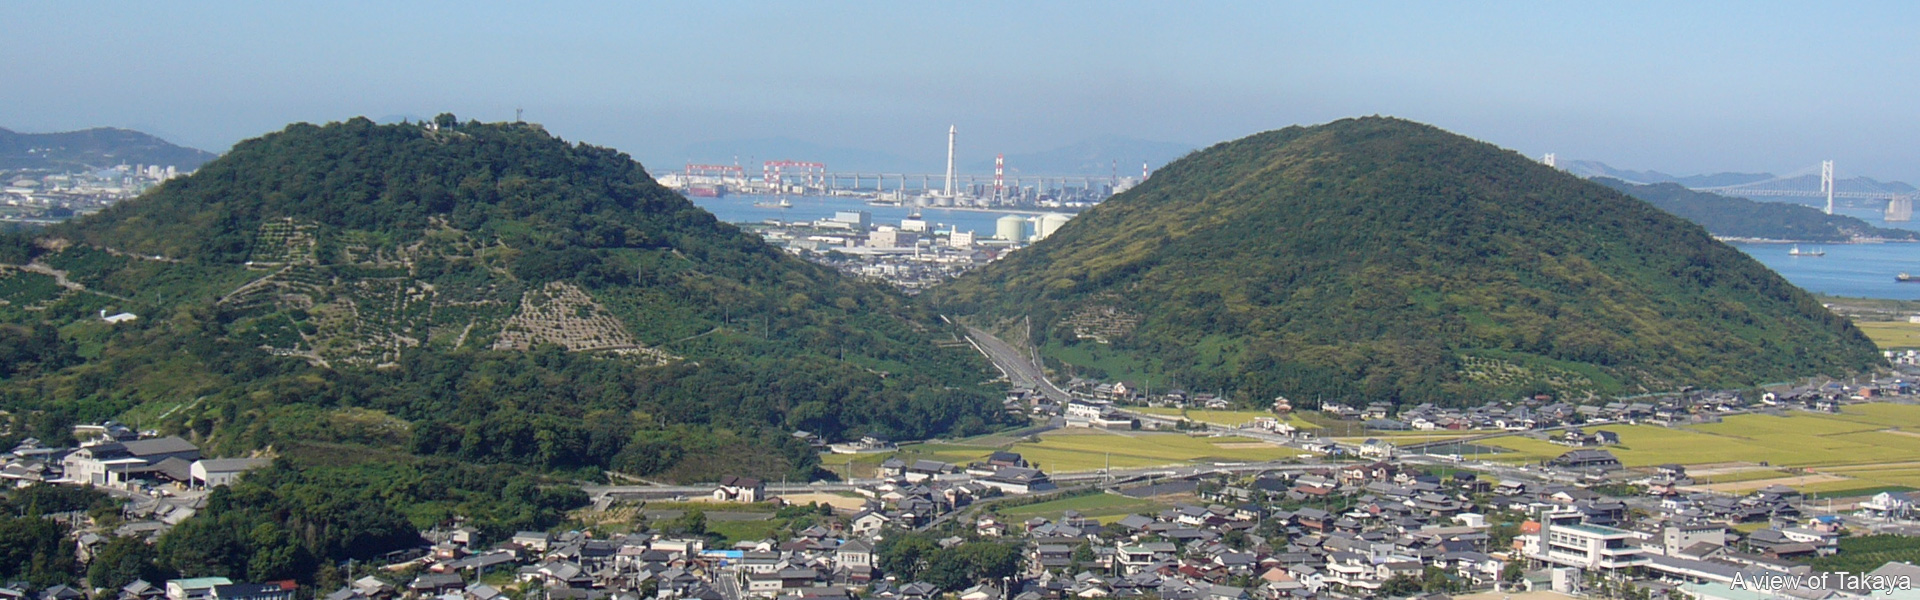 A view of Takaya